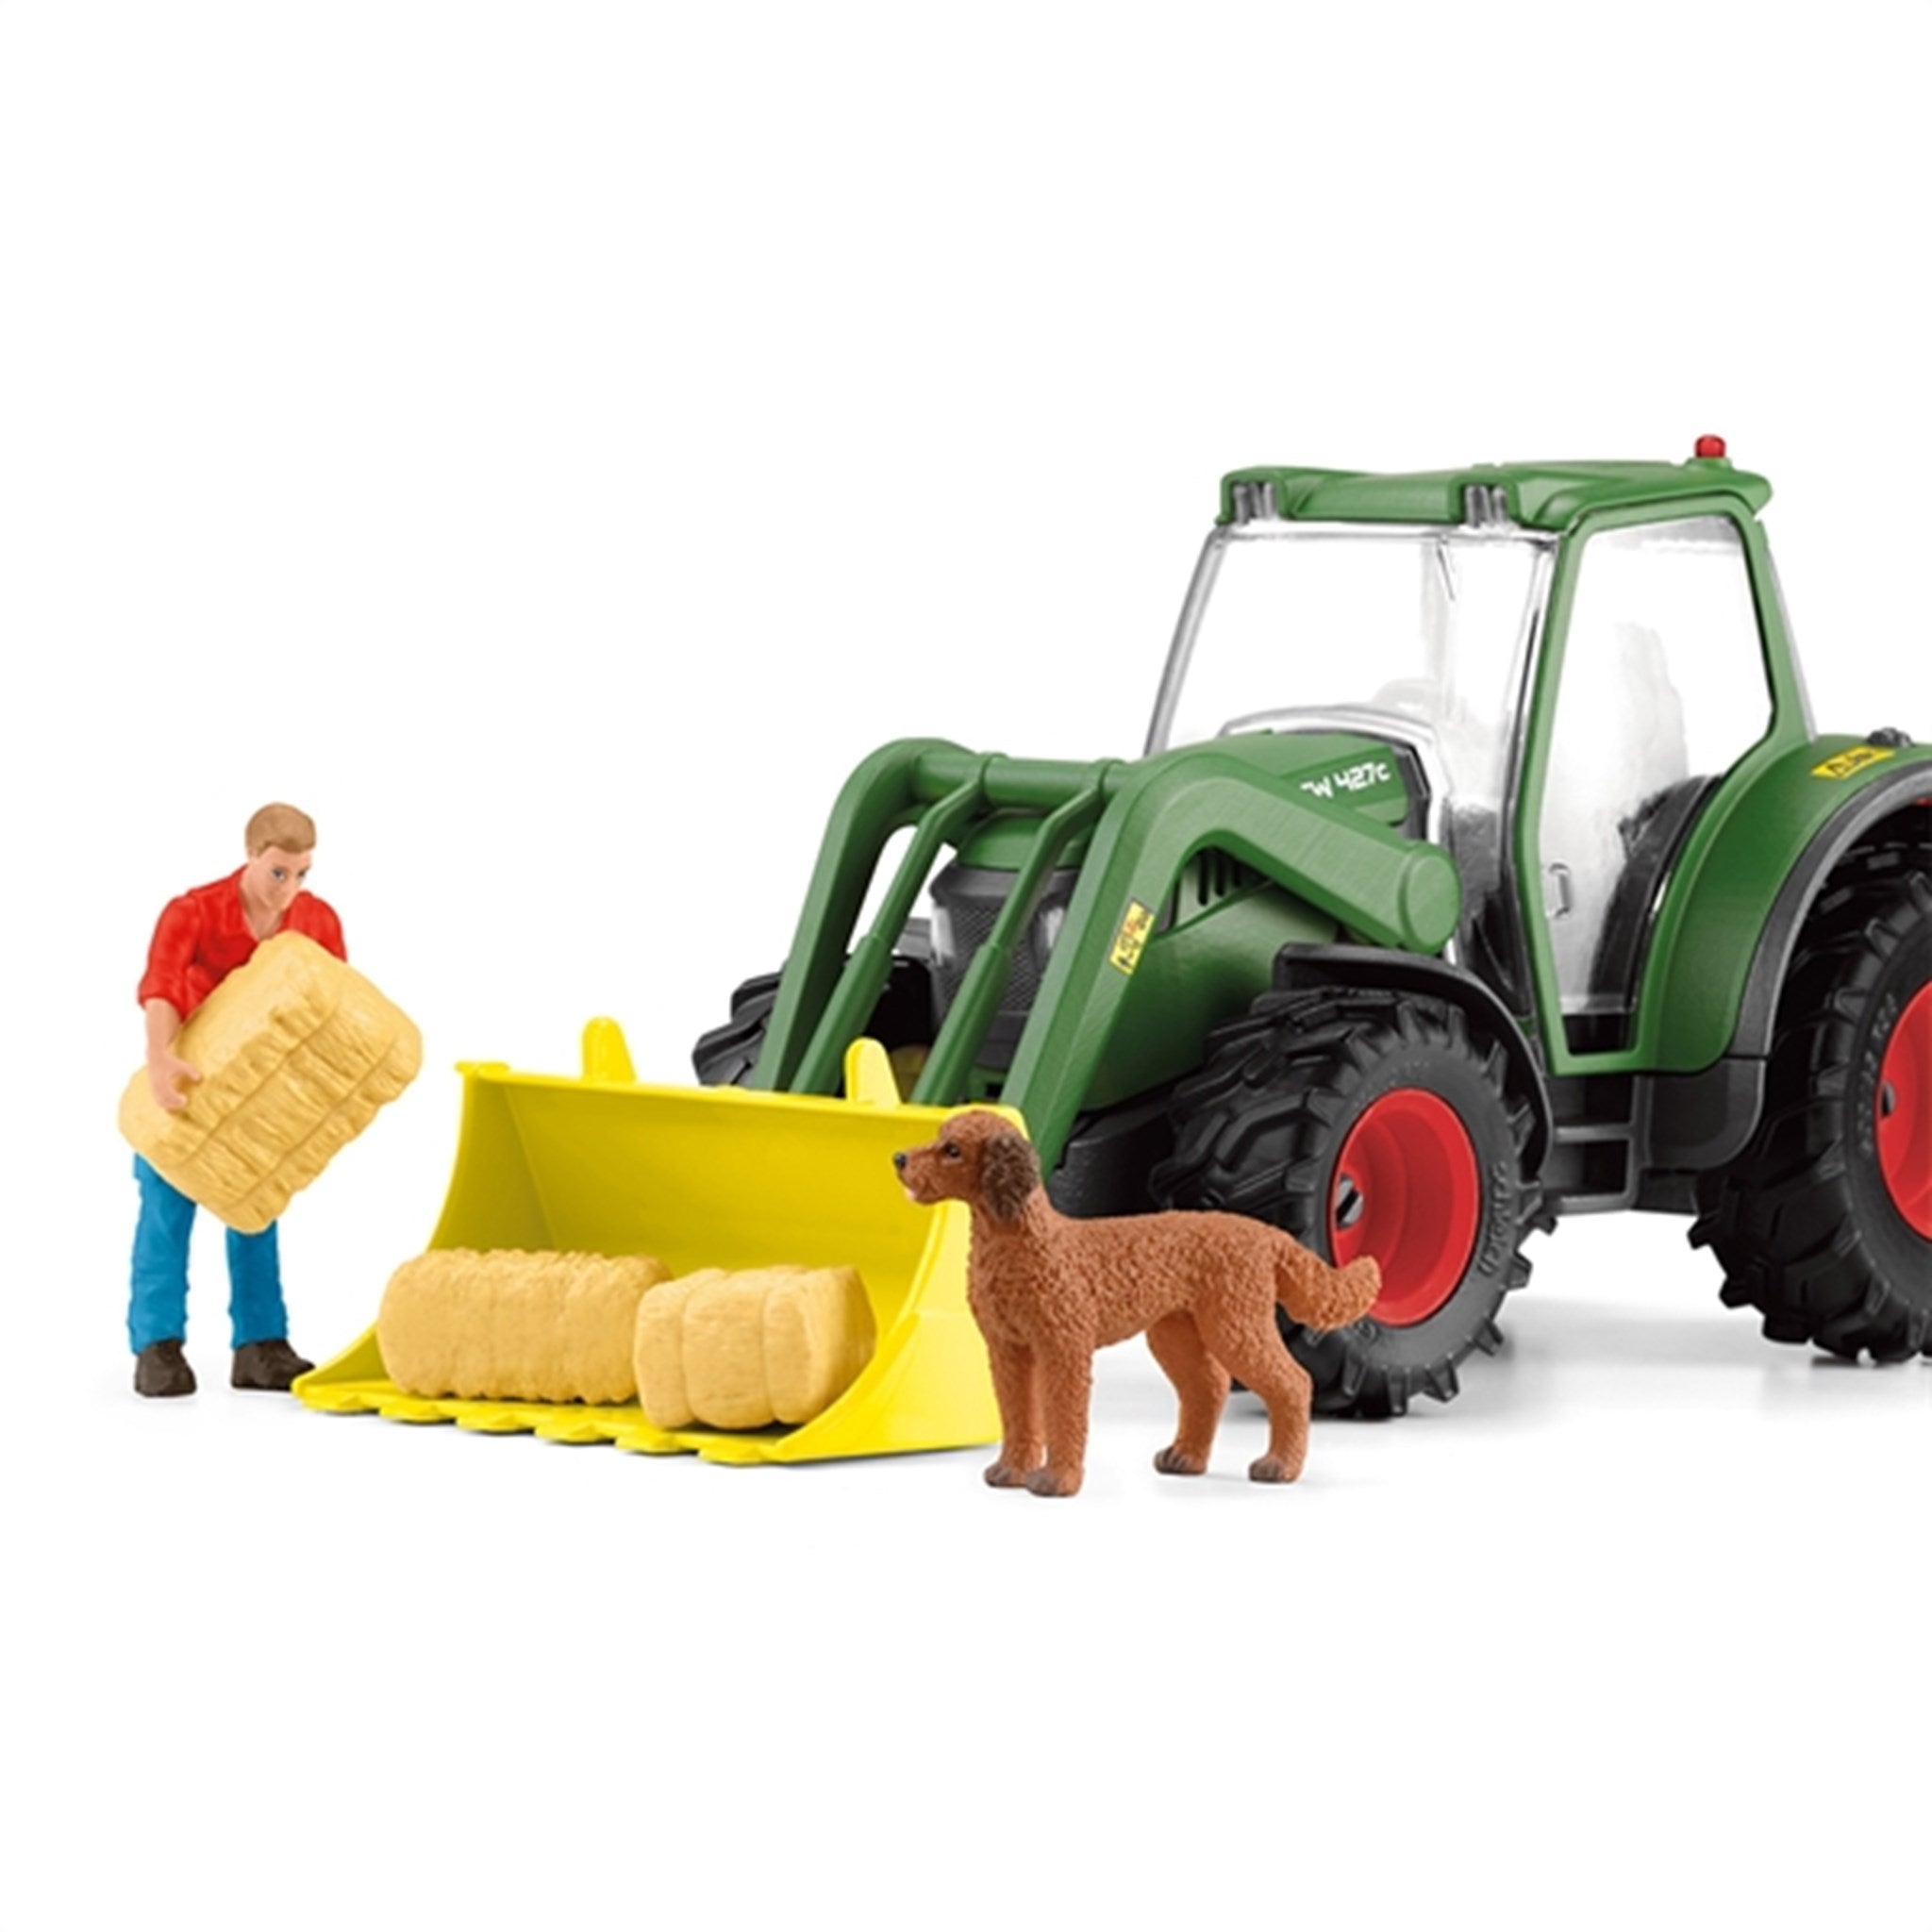 Schleich Farm World Tractor with Trailer 5